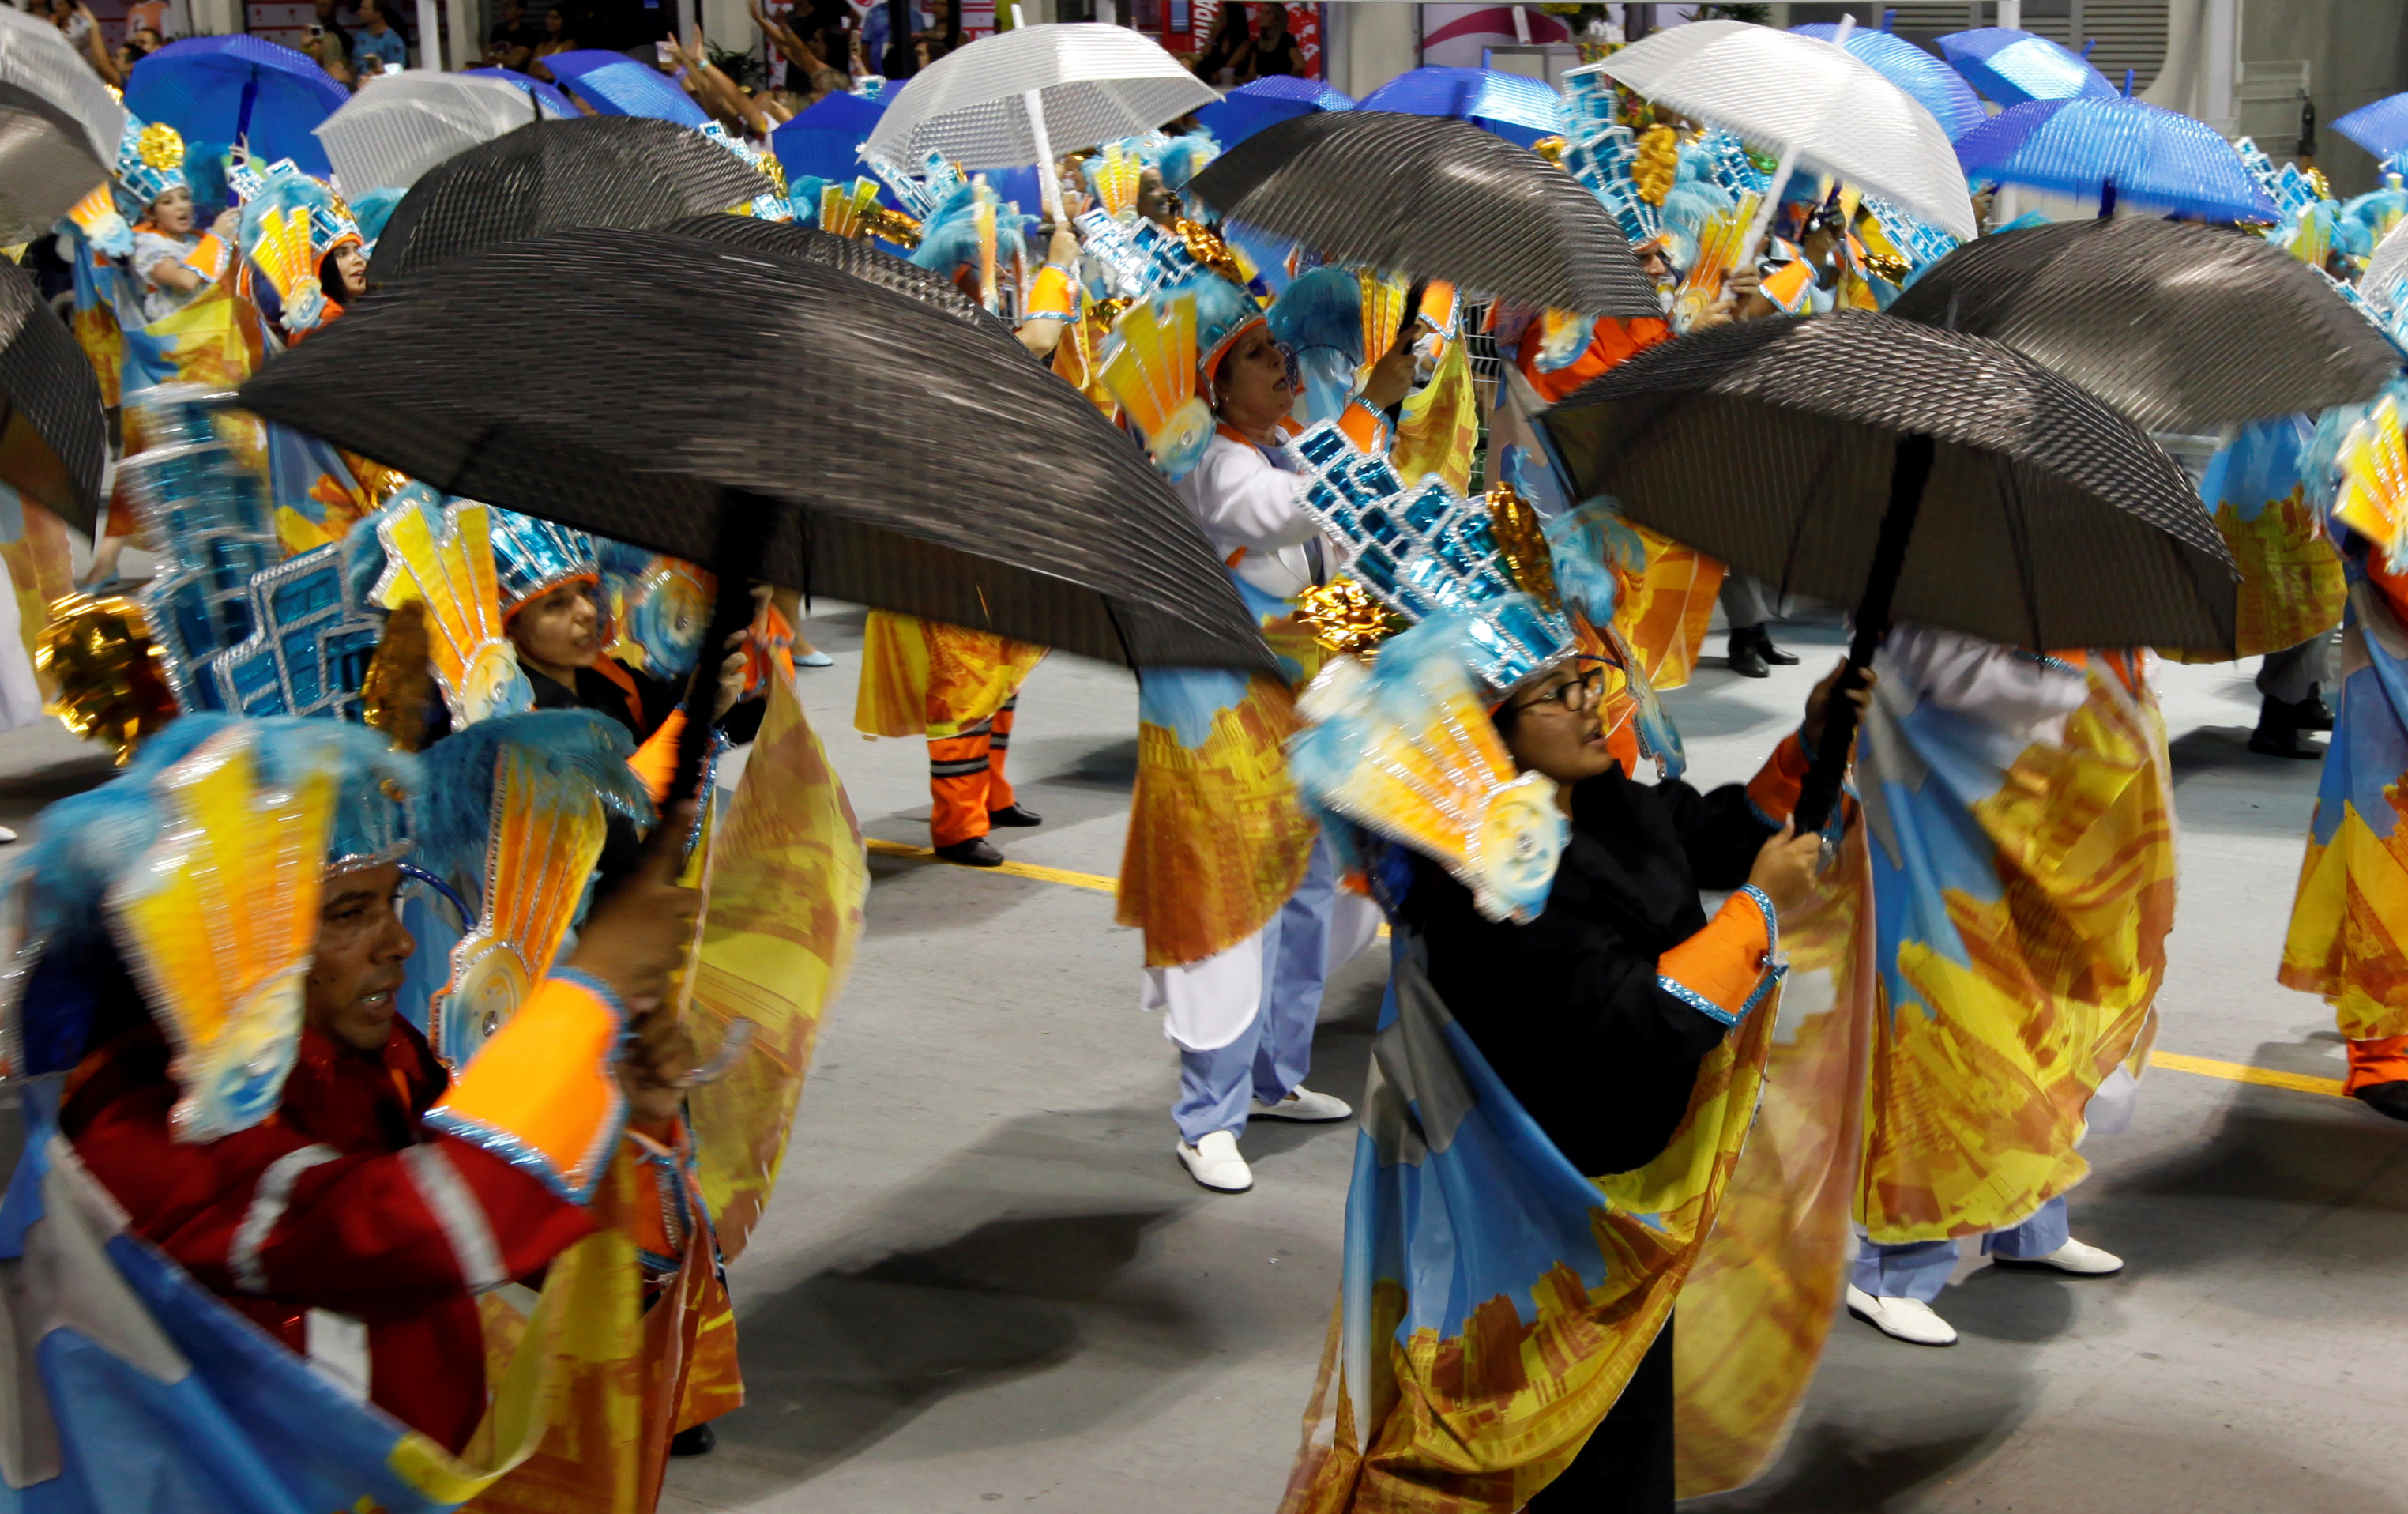 عروض فنية بالمظلات والملابس الملونة فى الكرنفال الشعبى بالبرازيل